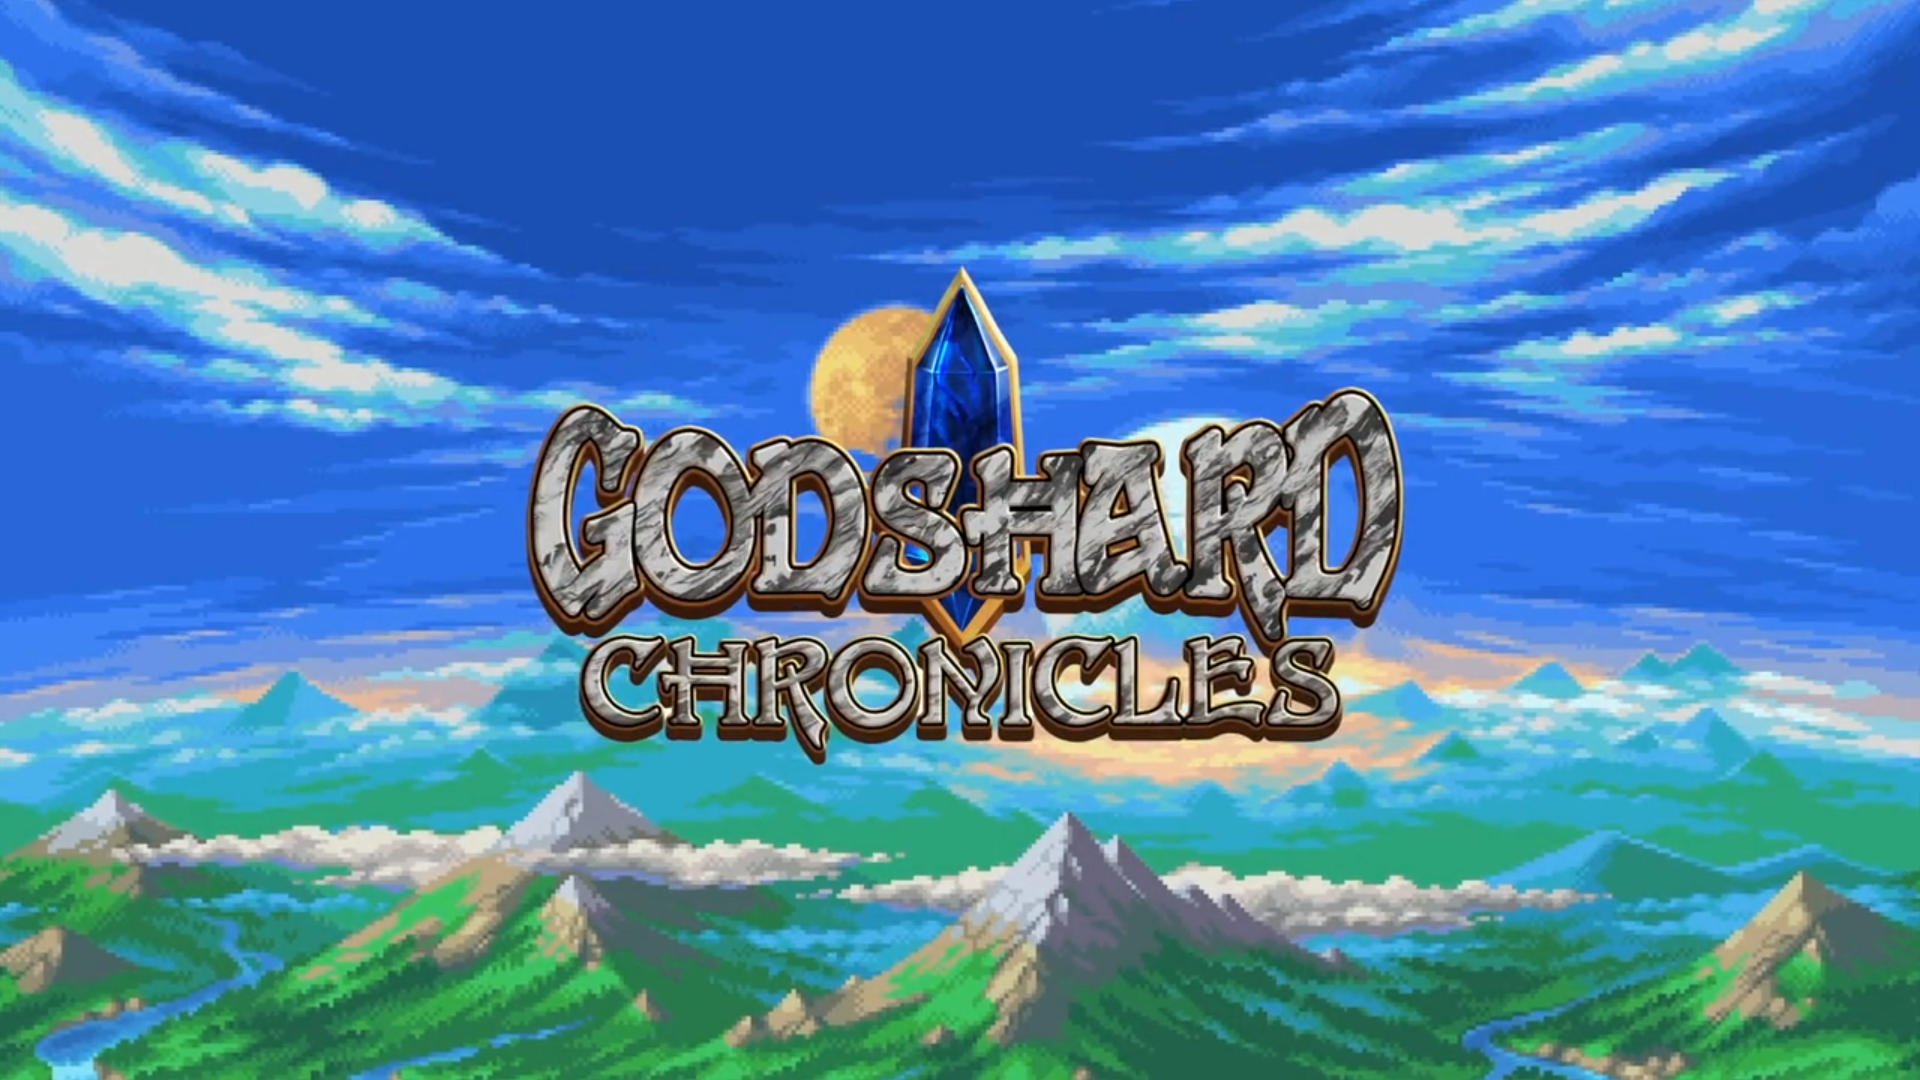 Godshard Chronicles [Game Showcase]